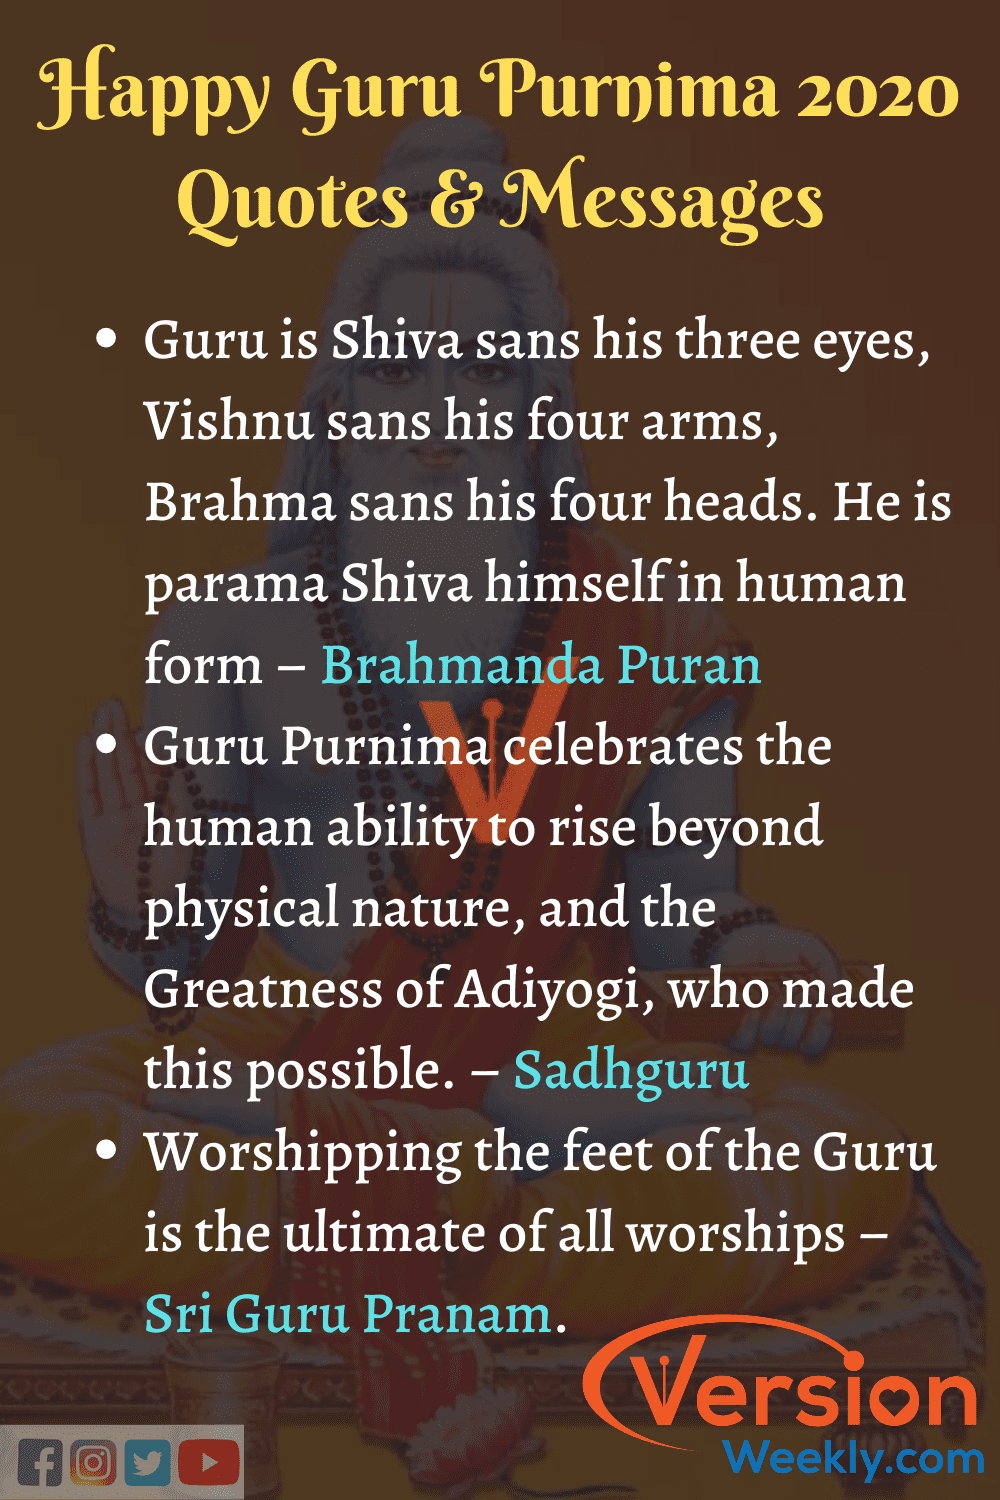 Quotes for Happy guru purnima 2020